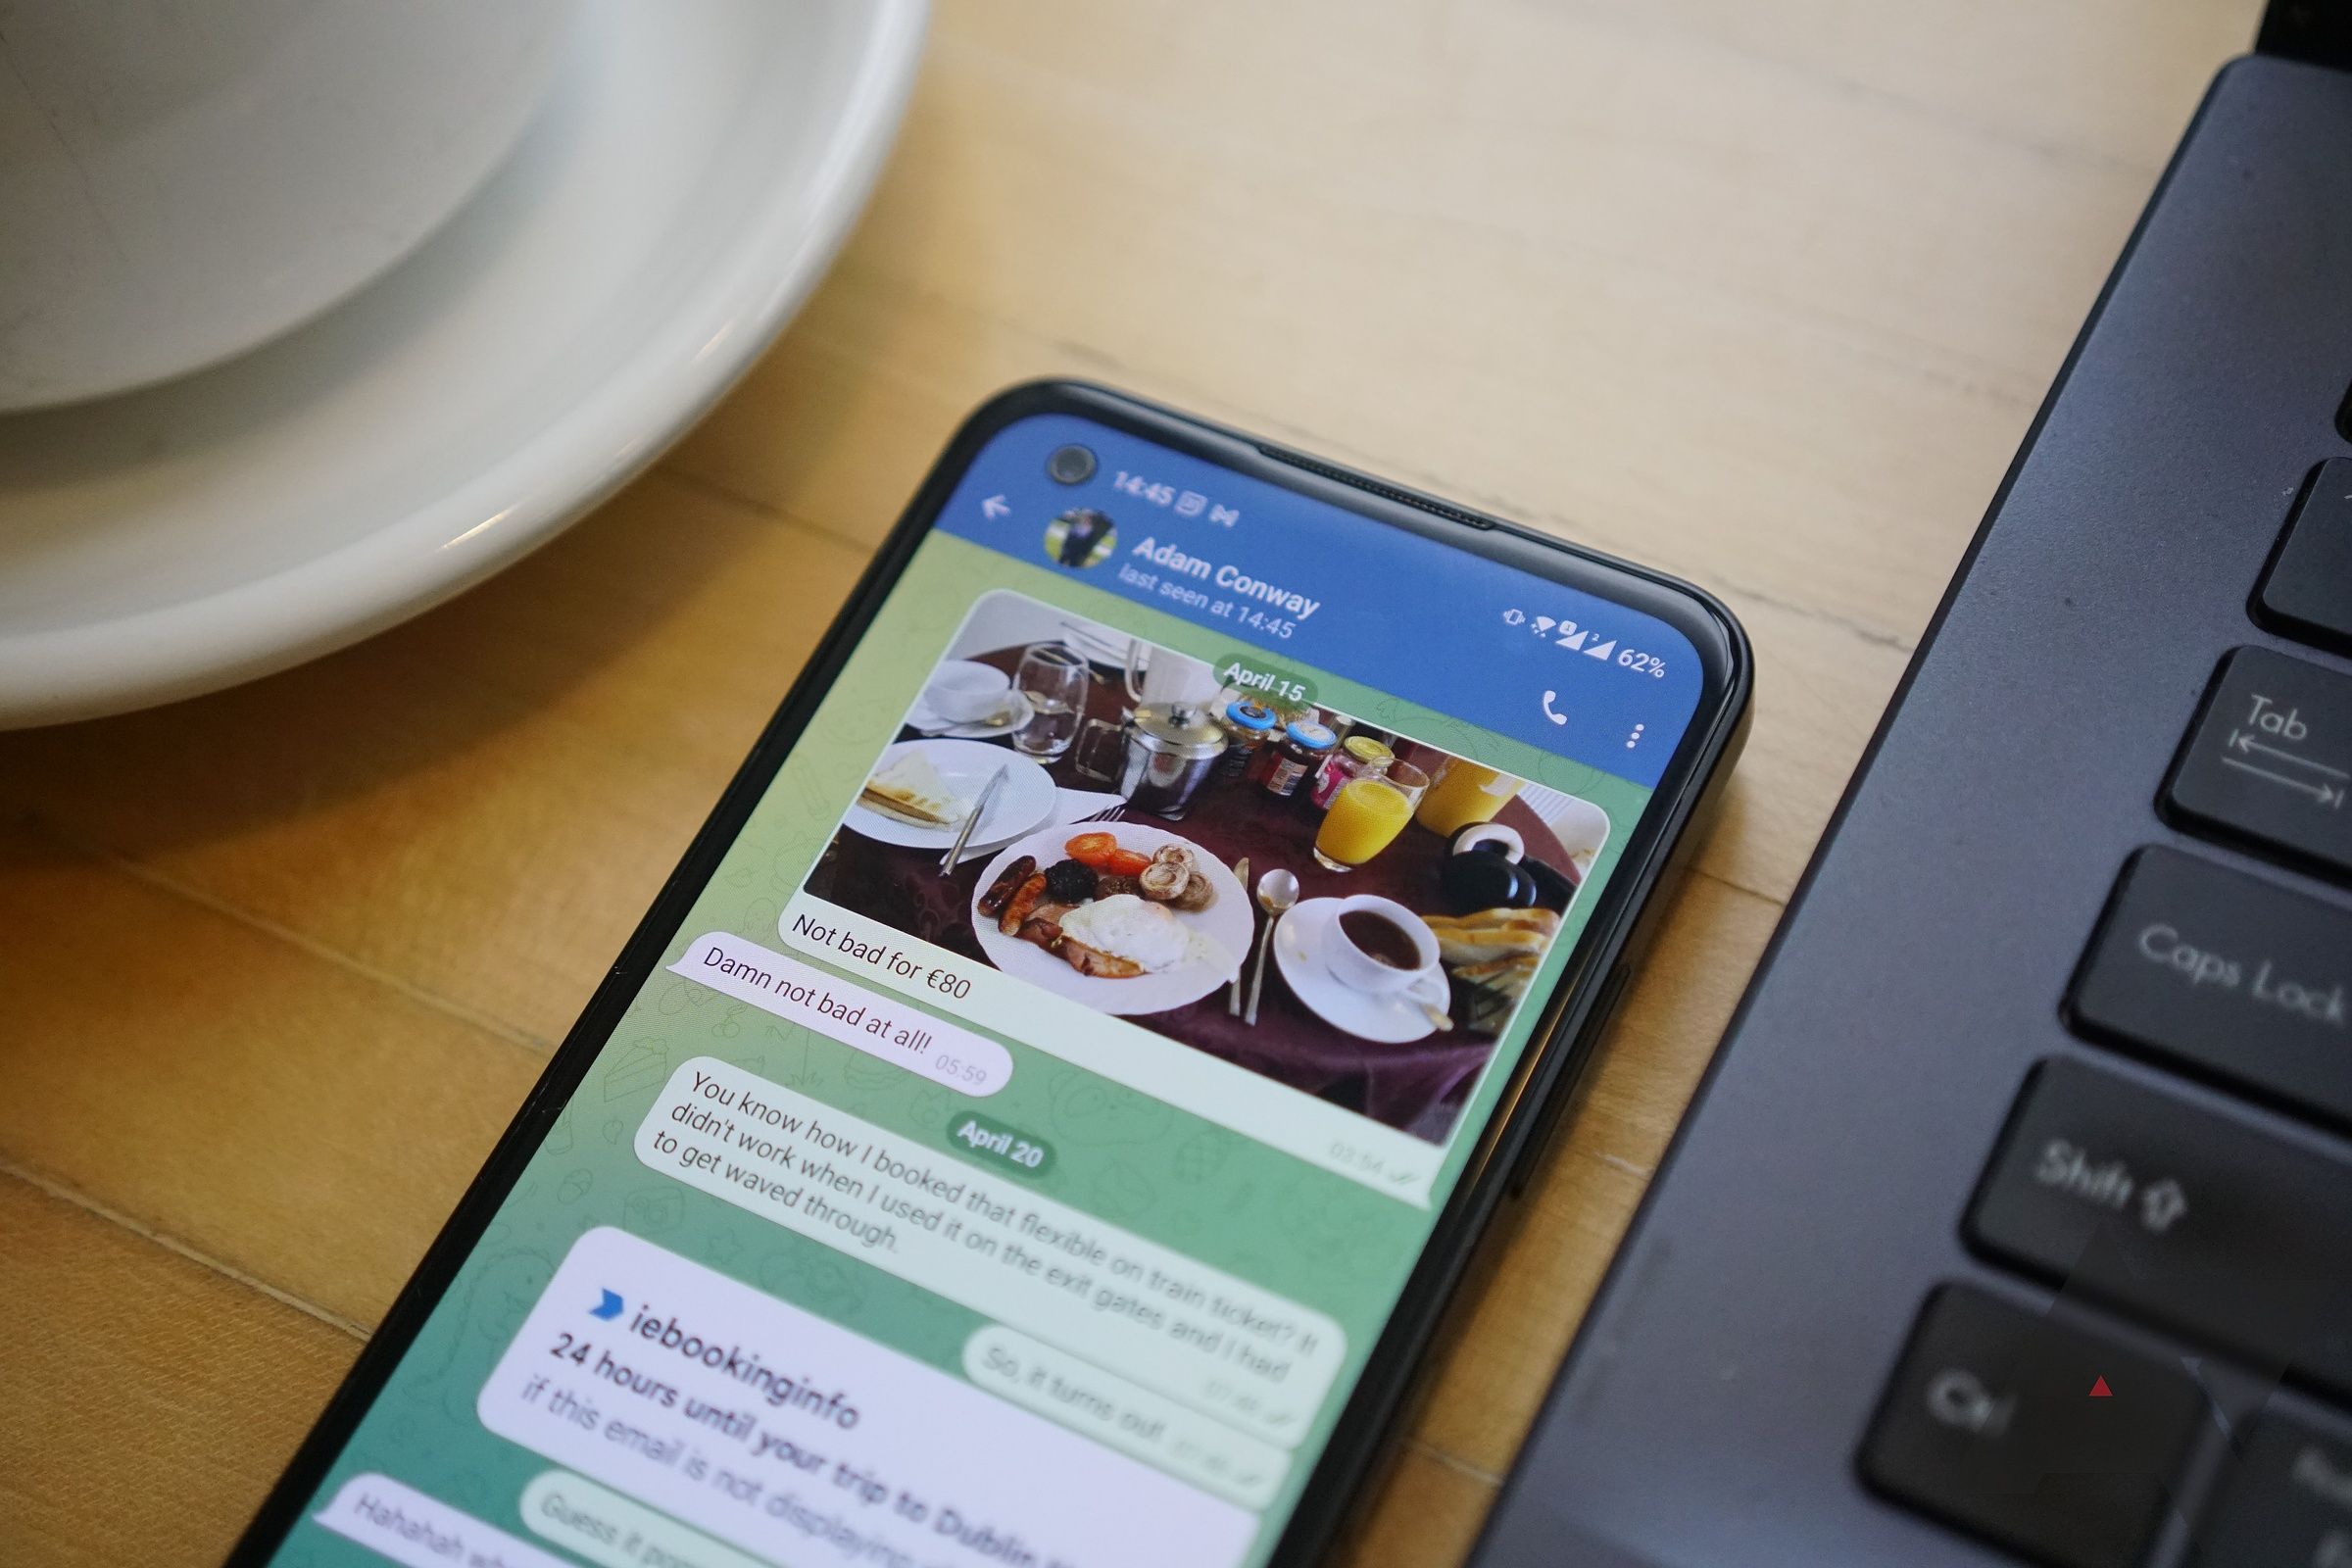 With Telegram, the app runs better on older phones